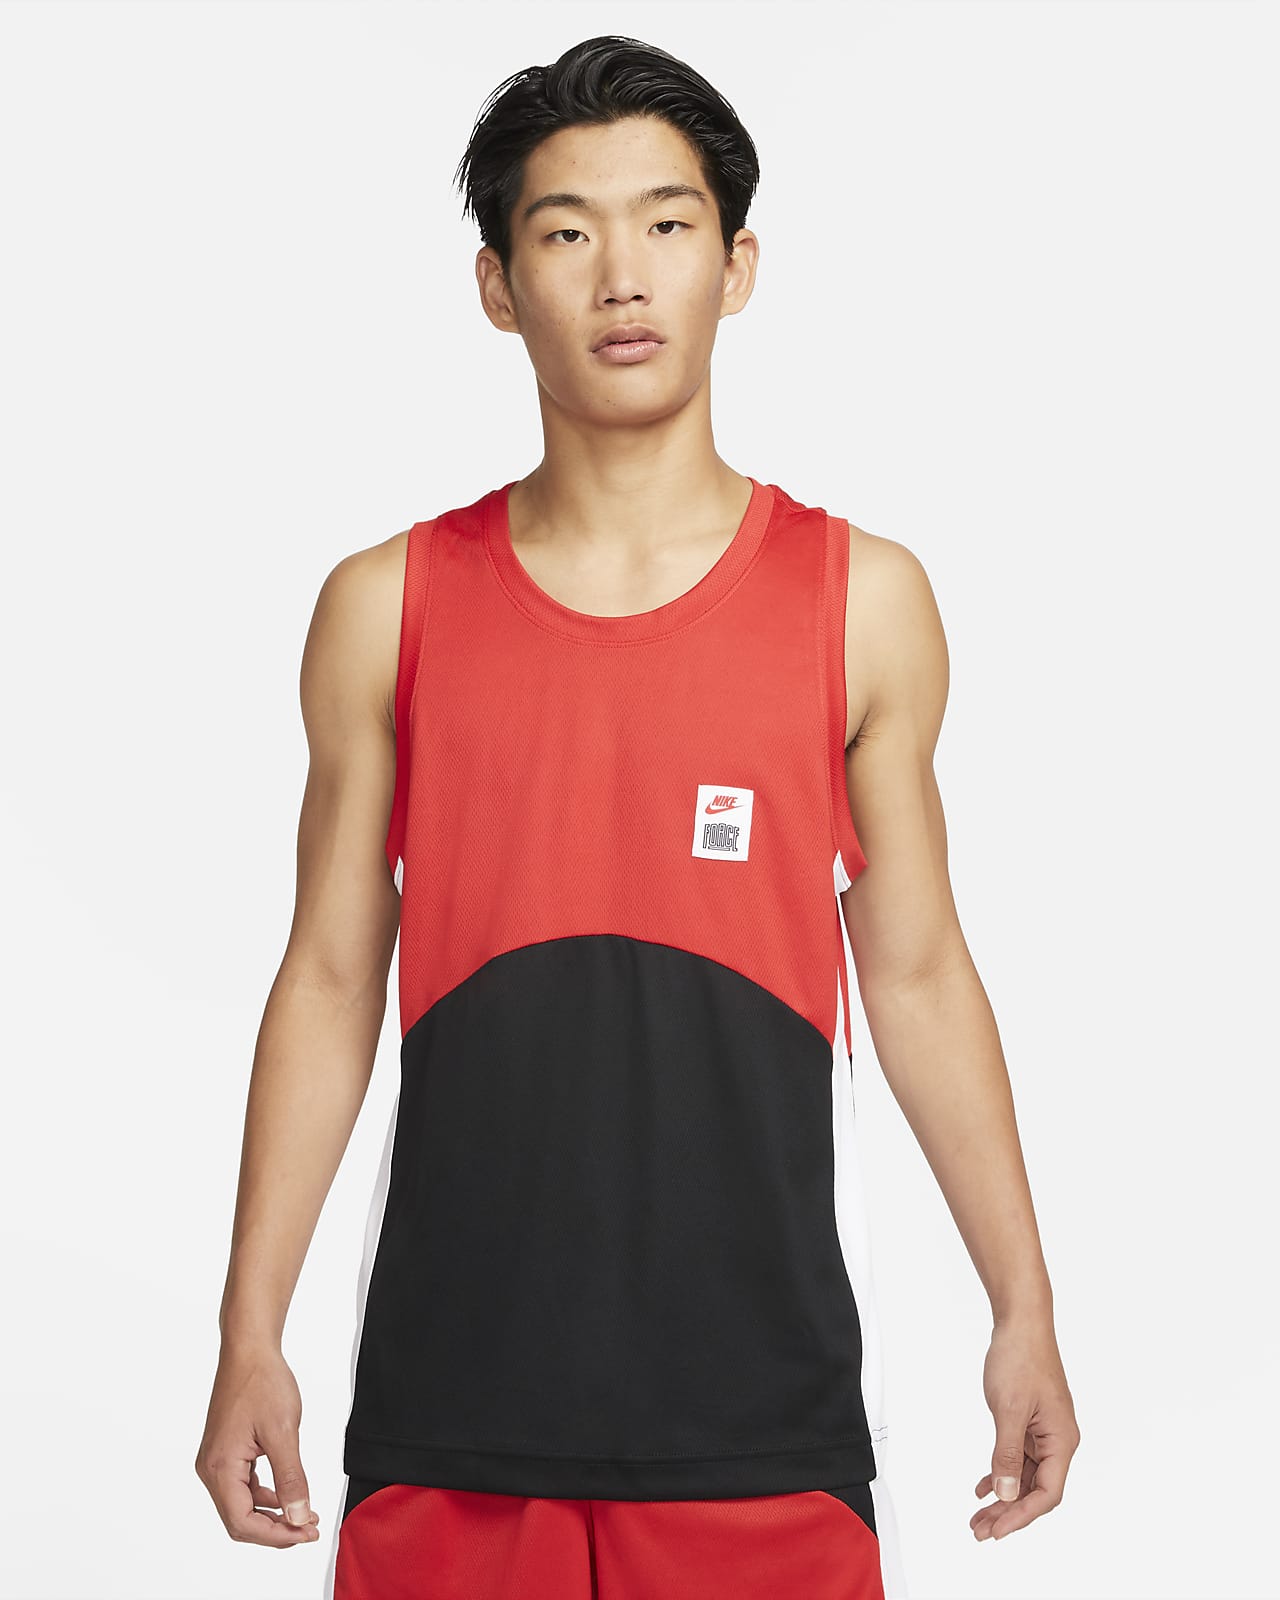 Nike Dri-FIT Starting 5 男款籃球球衣